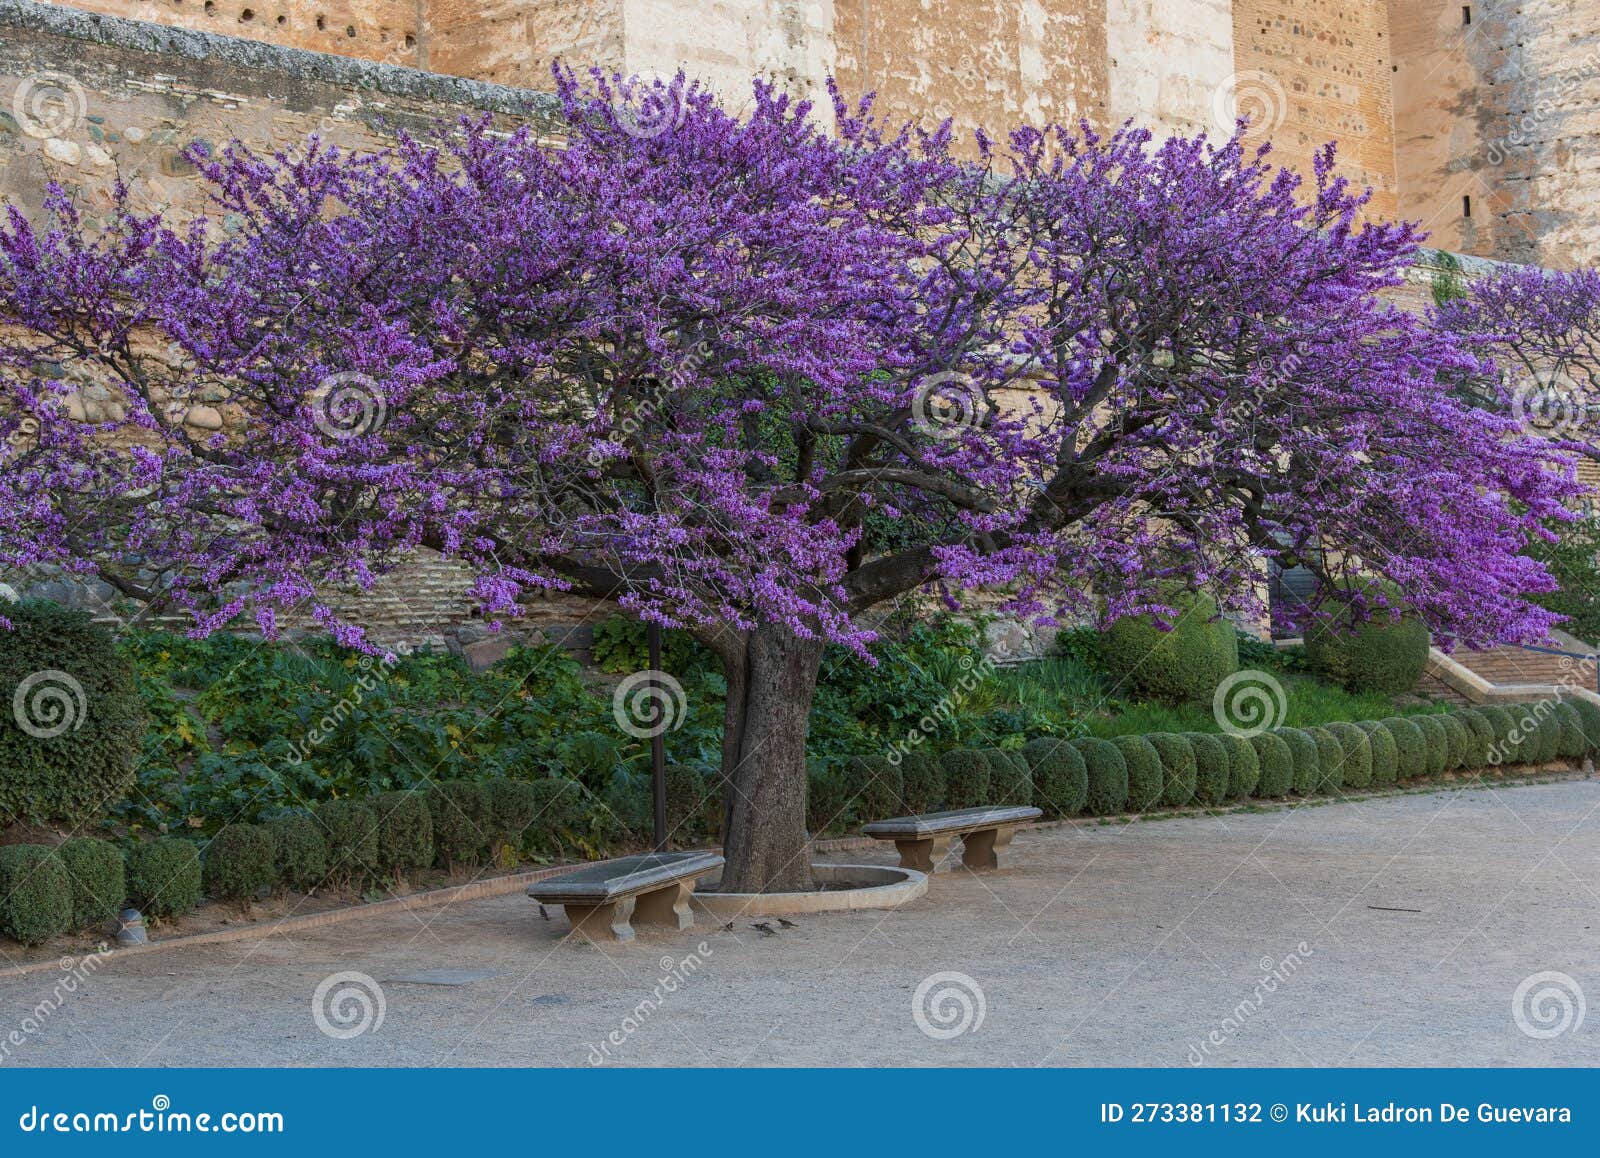 flowering tree of love, cercis siliquastrum